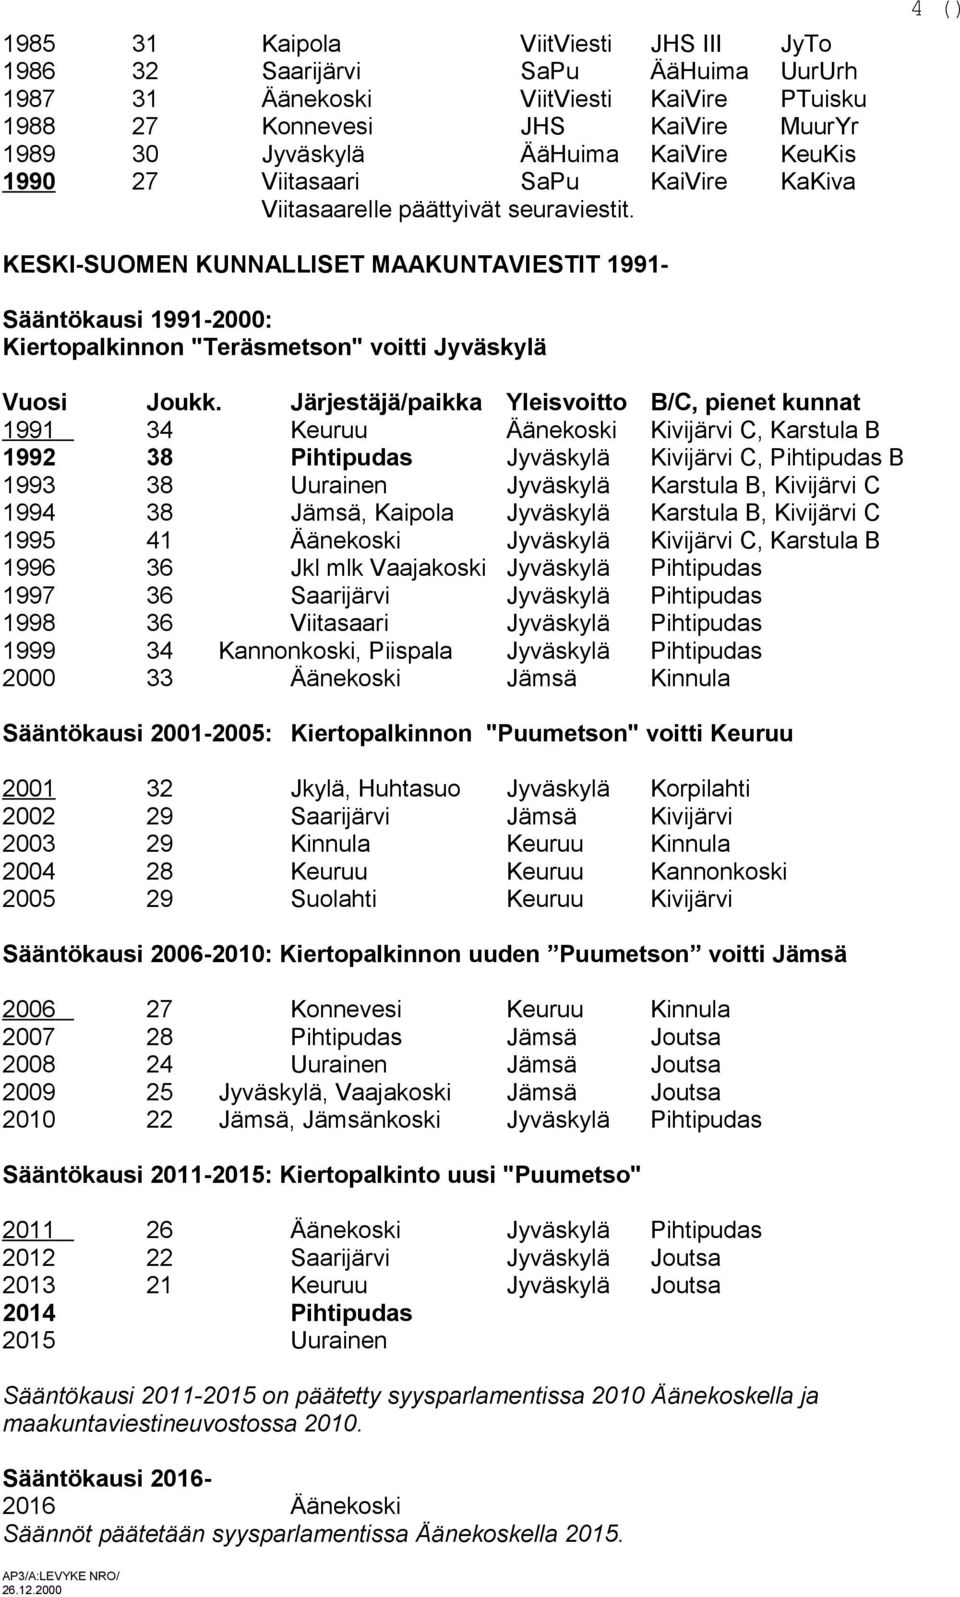 4 () KESKI-SUOMEN KUNNALLISET MAAKUNTAVIESTIT 1991- Sääntökausi 1991-2000: Kiertopalkinnon "Teräsmetson" voitti Jyväskylä Vuosi Joukk.